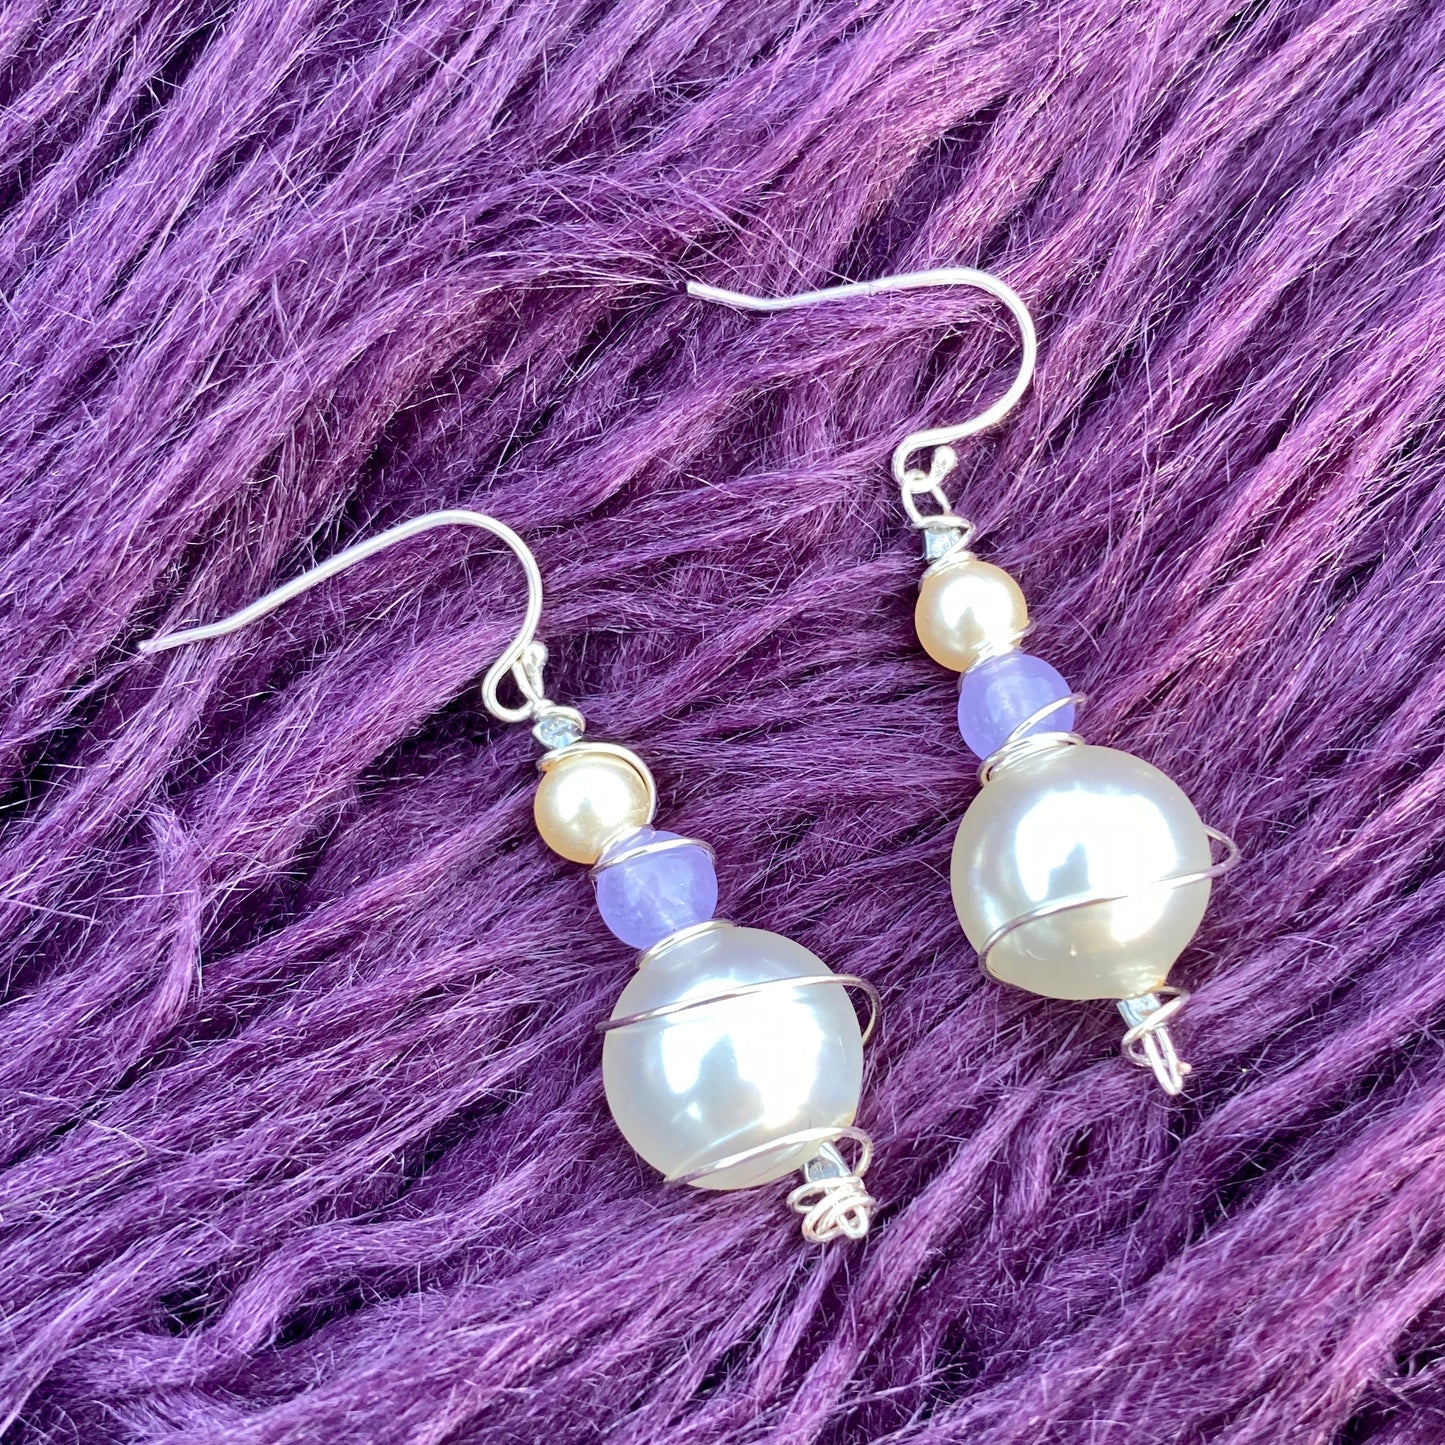 Merle’s Pearls - Antique Pearl Sterling Silver Earrings